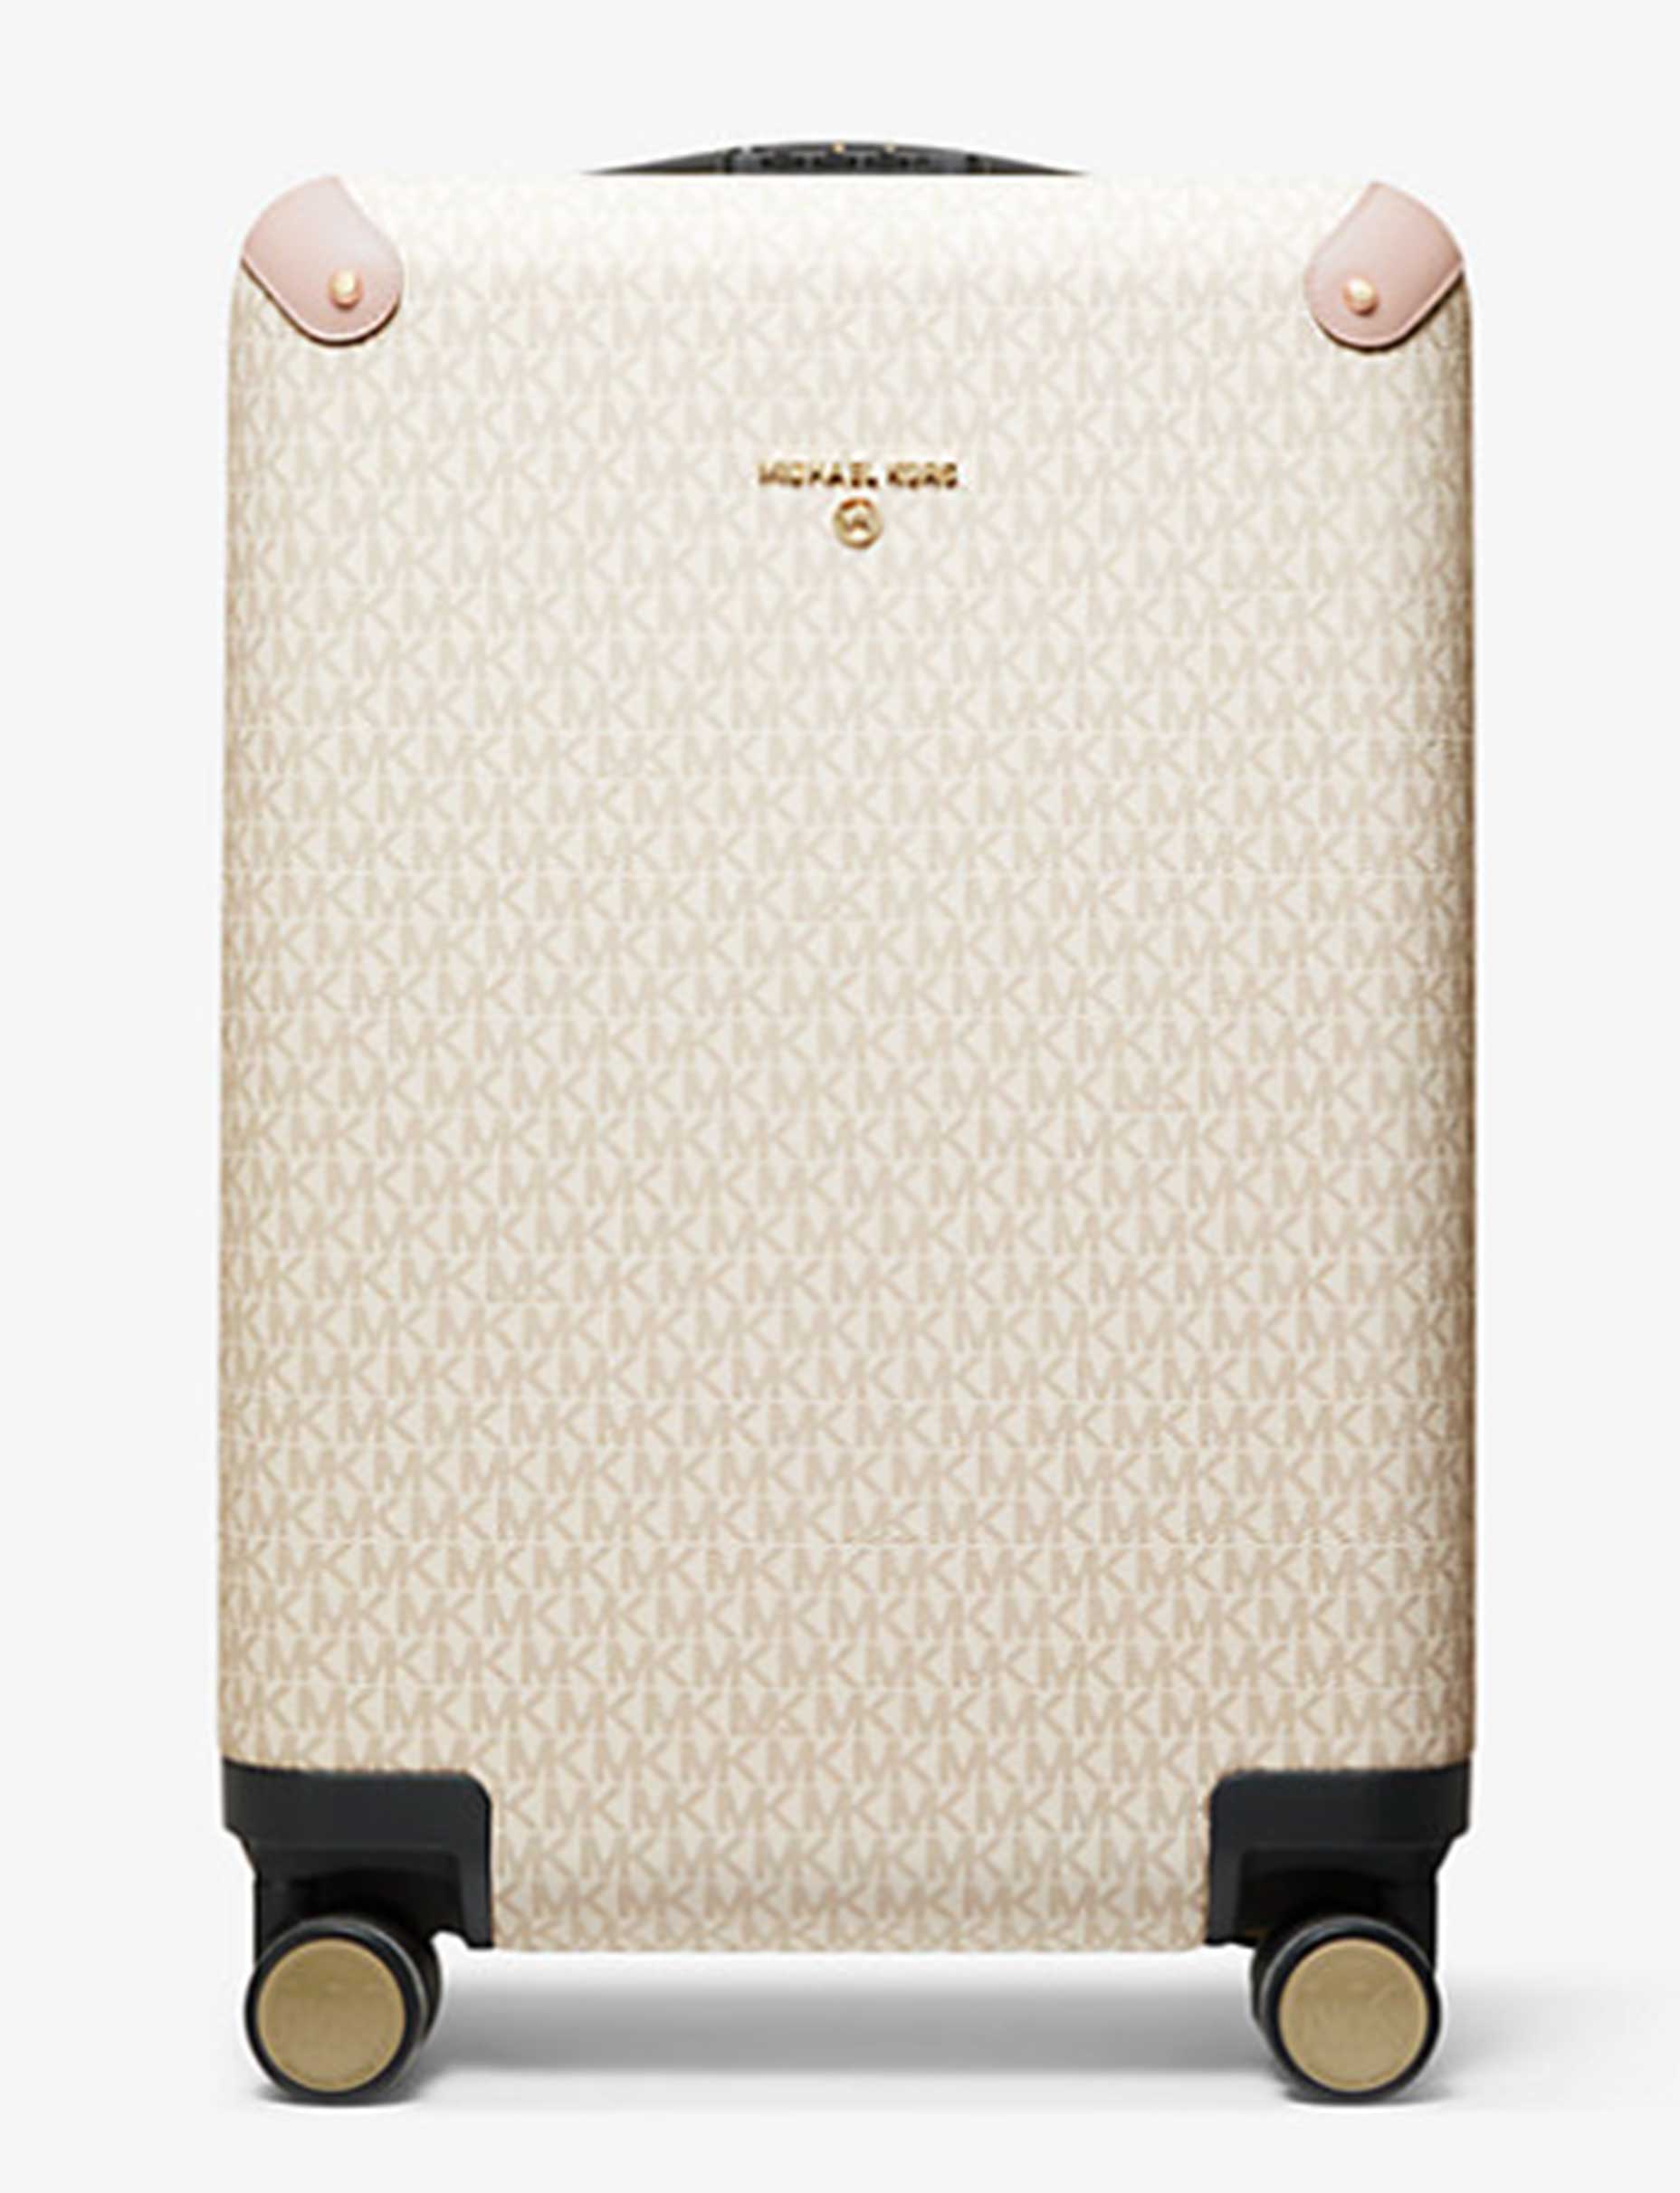 a Michael Kors suitcase